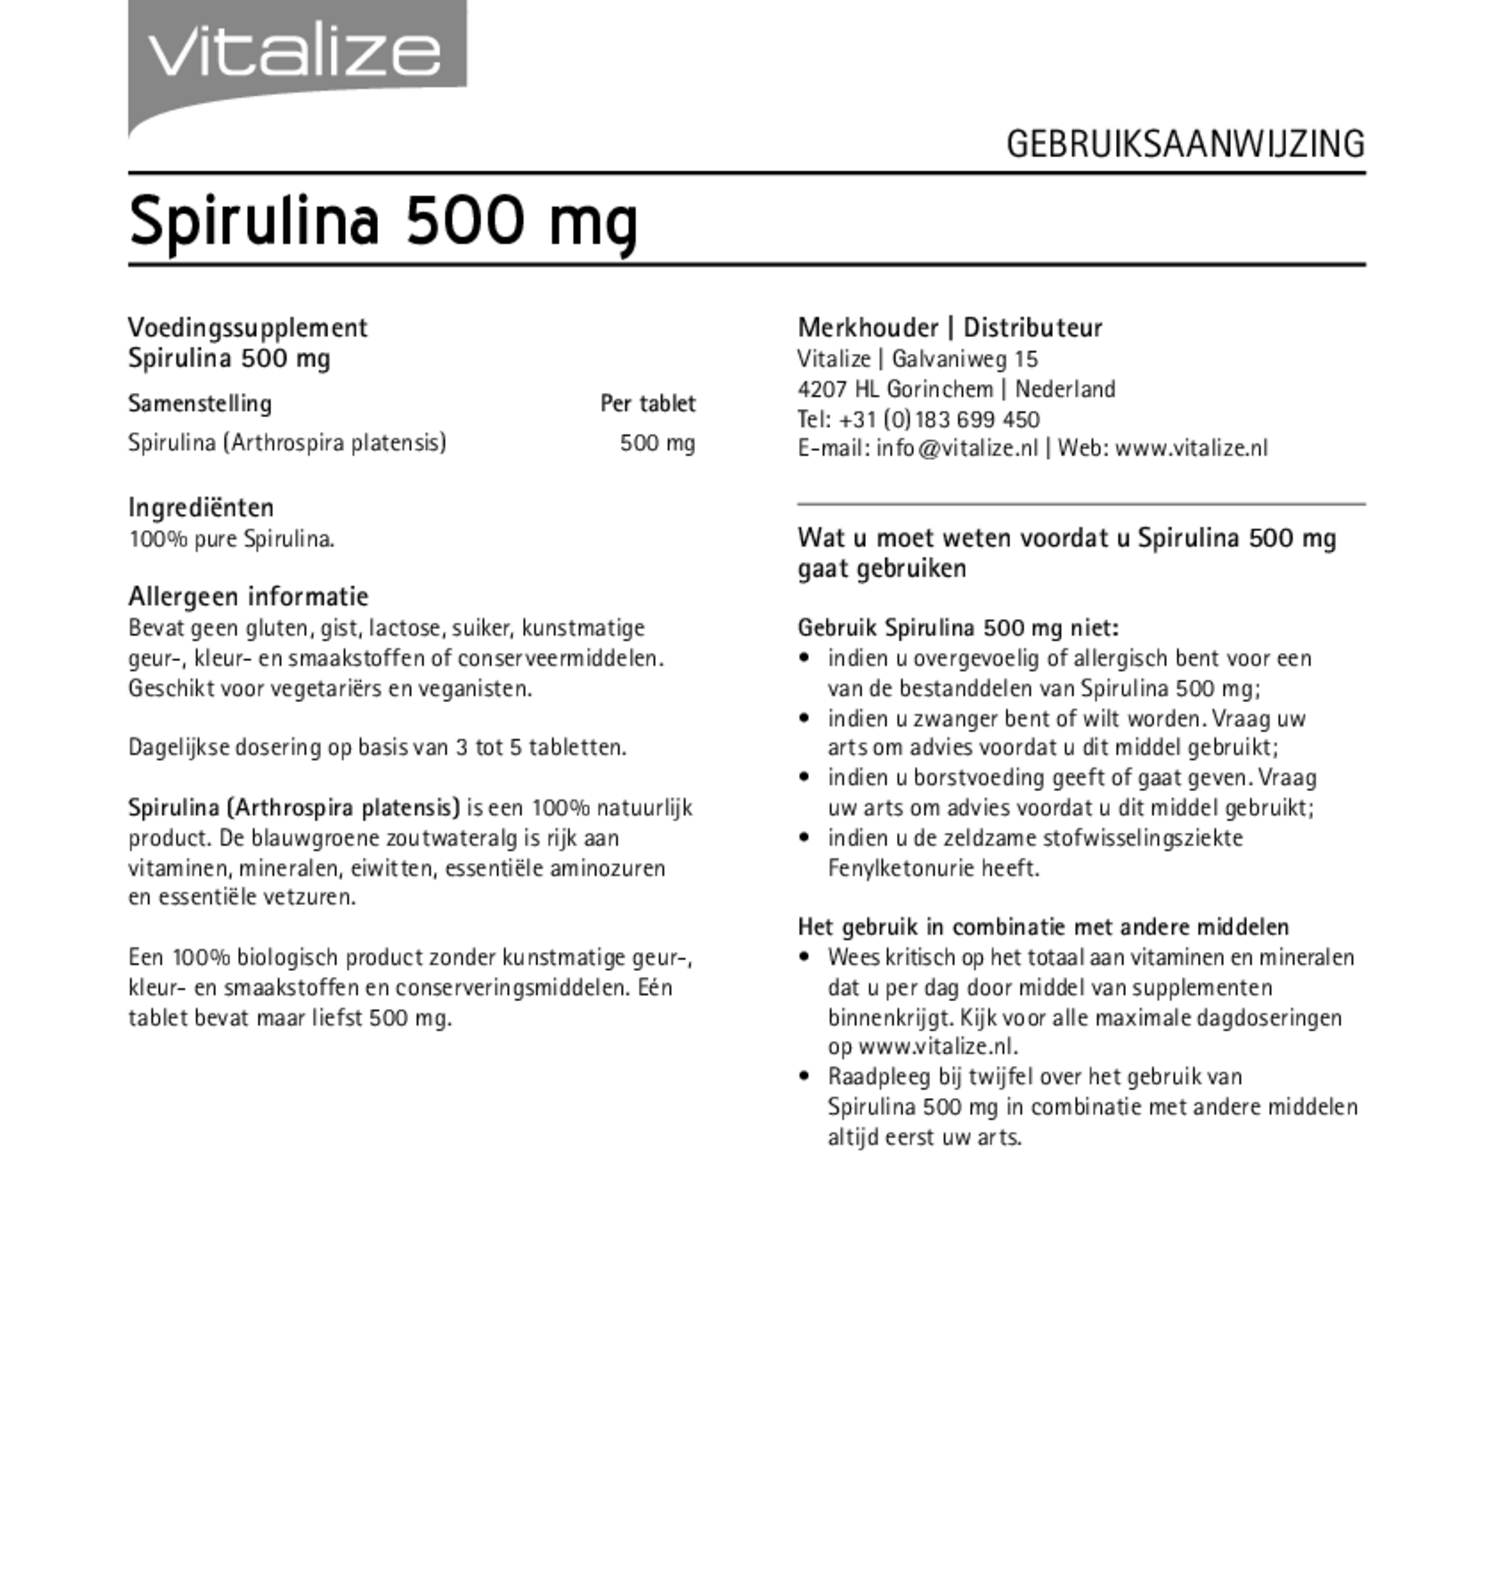 Spirulina 500 mg Tabletten afbeelding van document #1, gebruiksaanwijzing